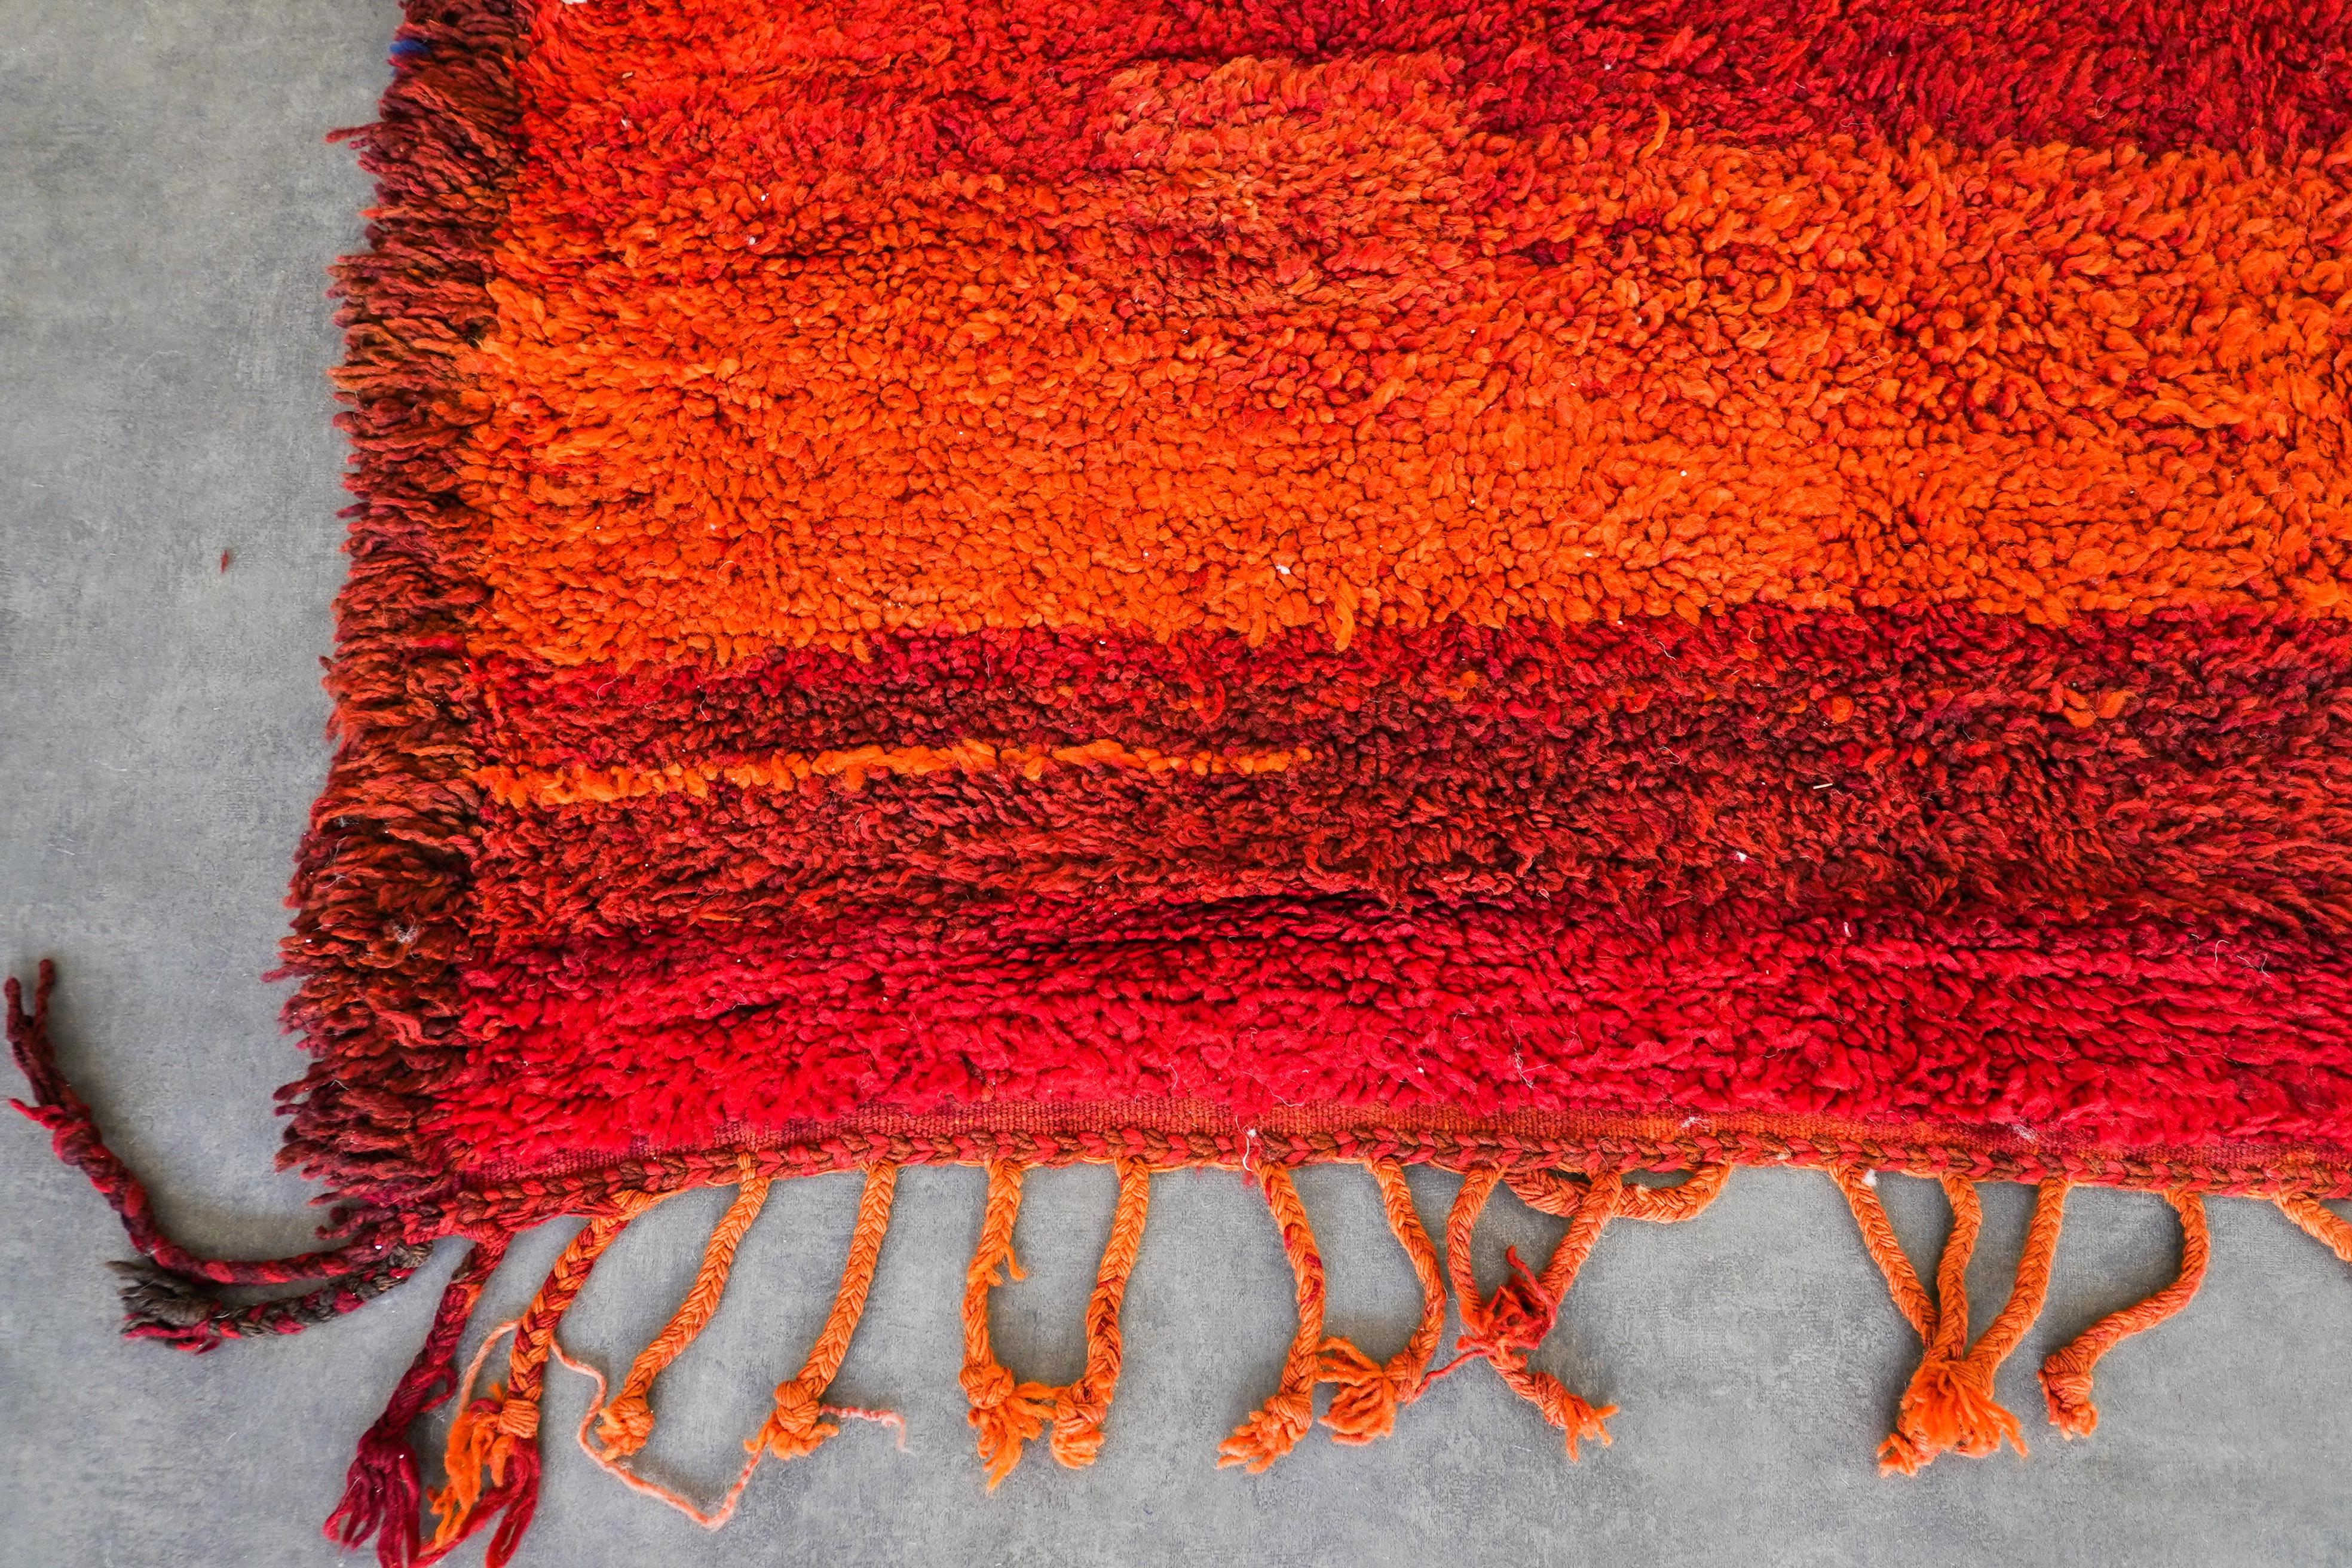 Entdecken Sie das reiche Erbe, das in unseren roten marokkanischen Vintage-Teppich eingewoben ist. Jeder Berberteppich wird von erfahrenen Kunsthandwerkern mit bewährten Techniken handgefertigt und ist ein einzigartiges Zeugnis der marokkanischen